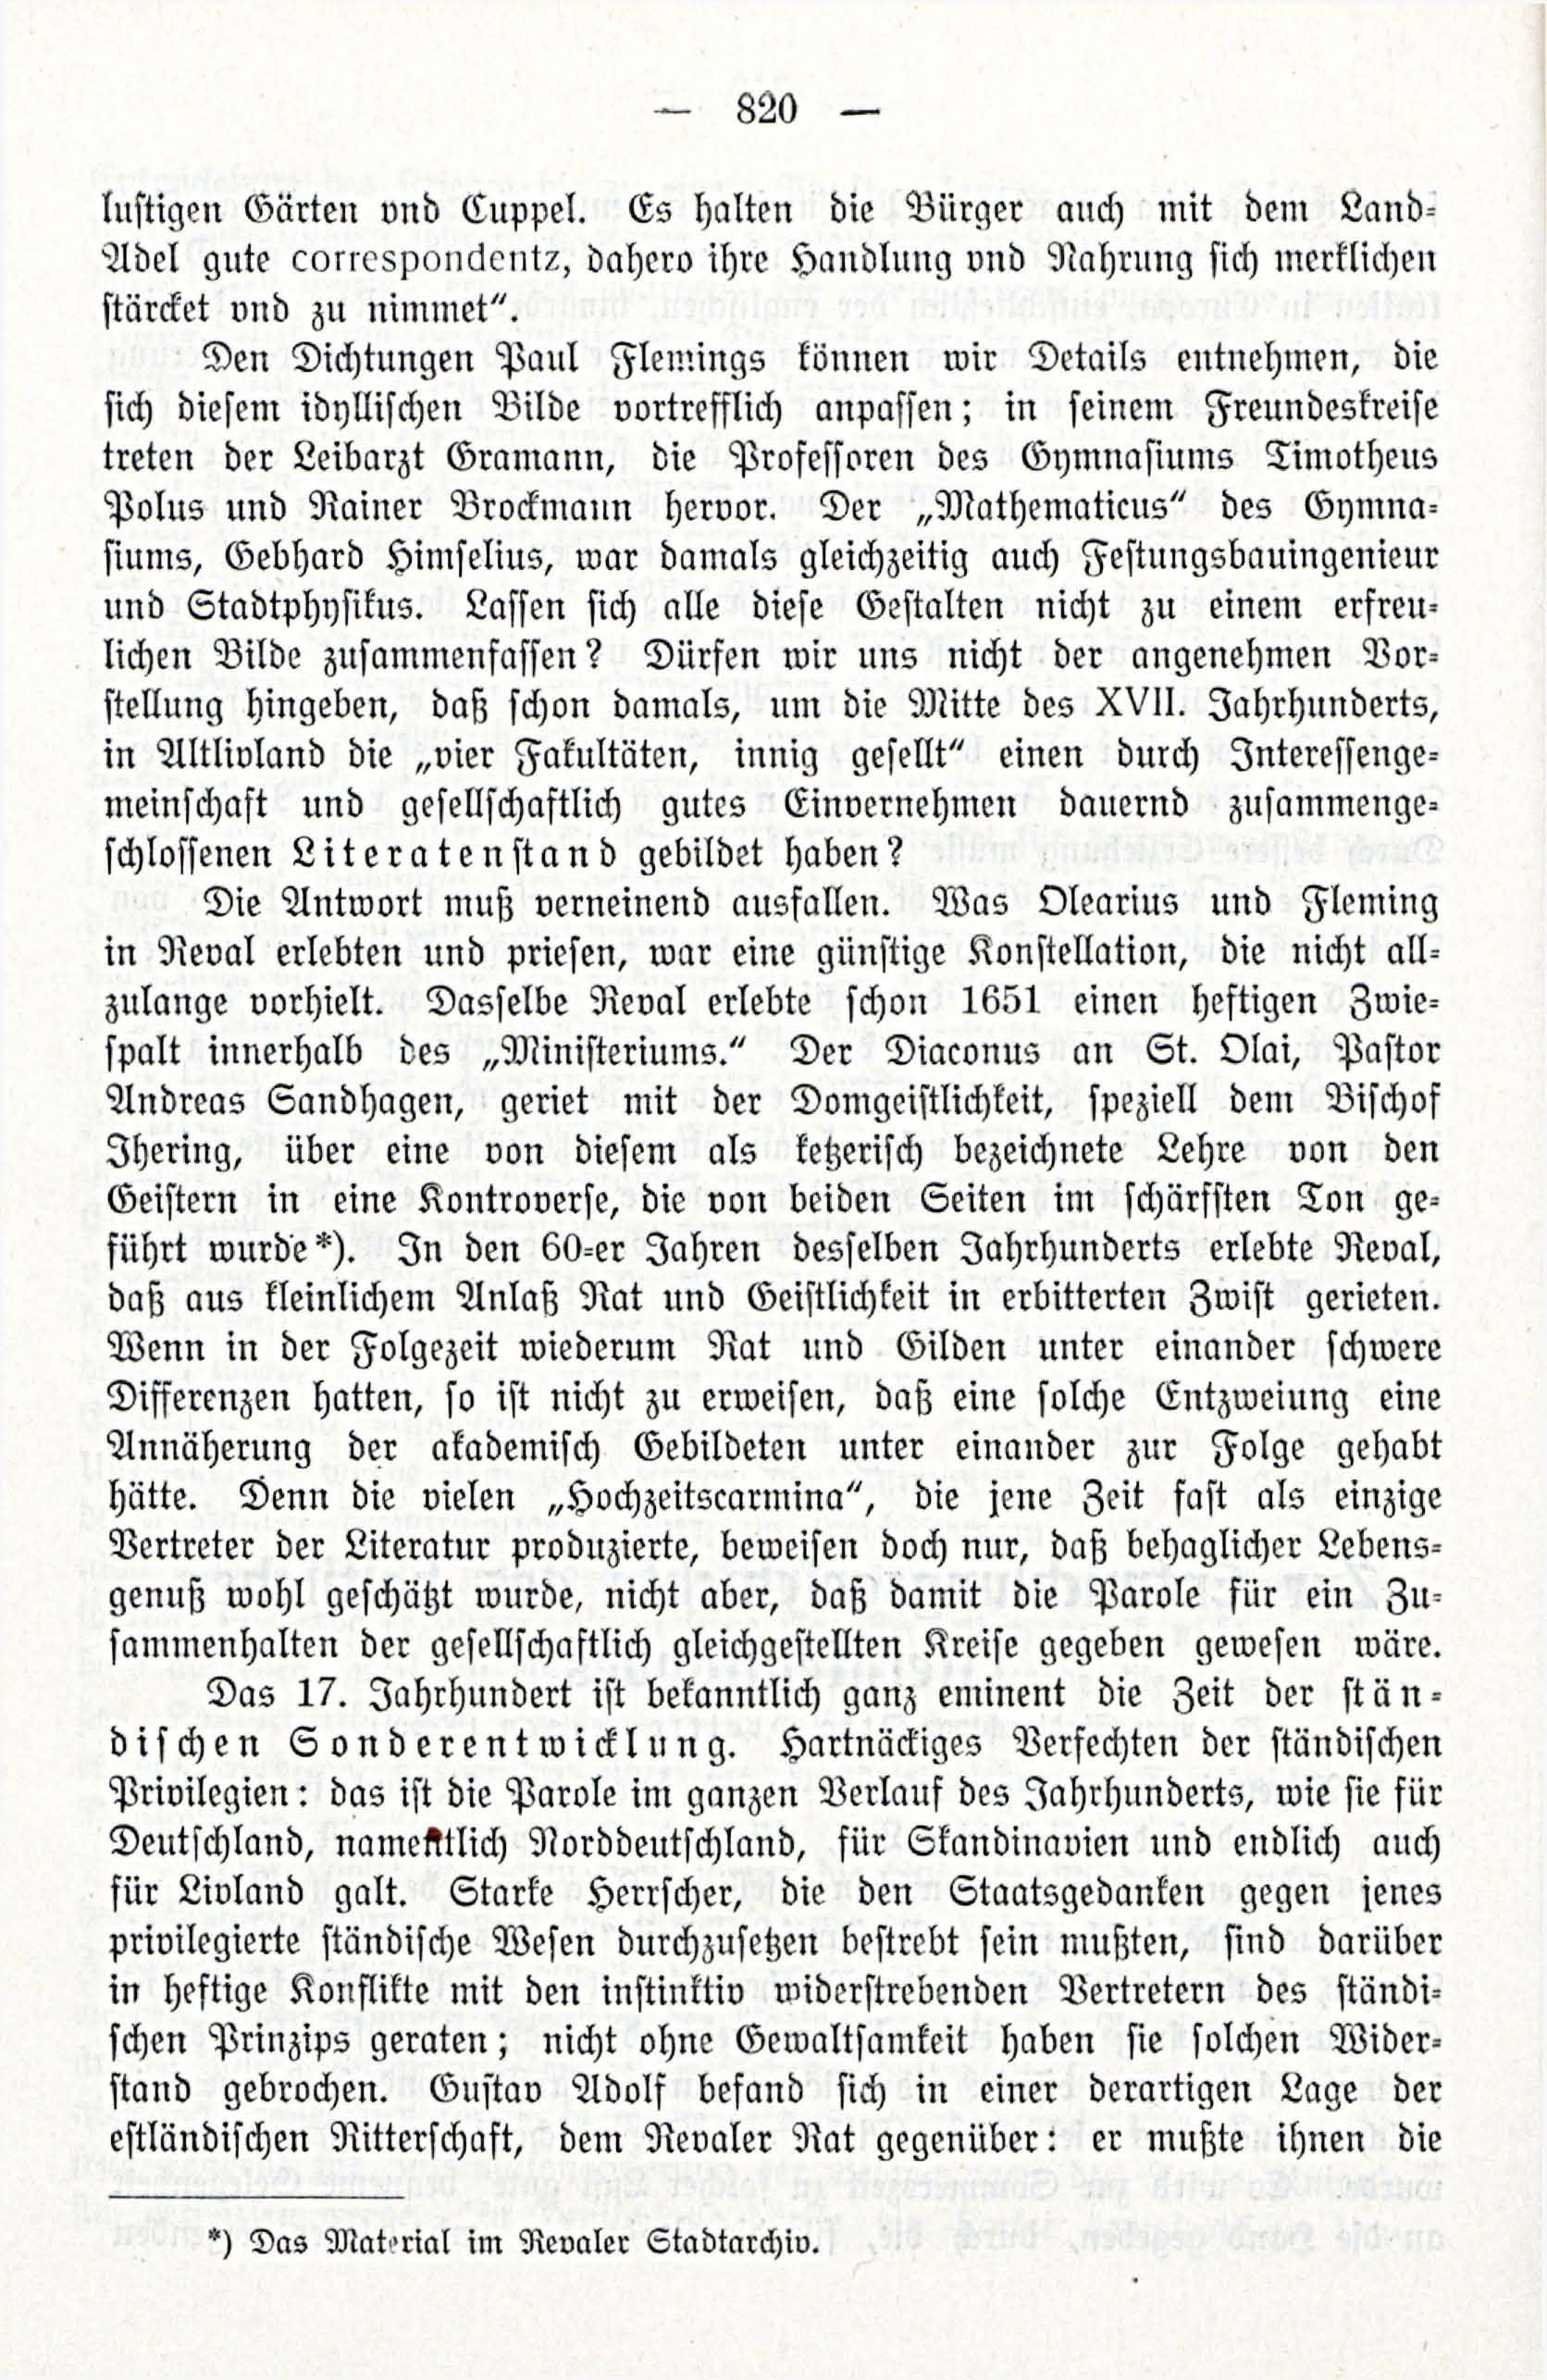 Deutsche Monatsschrift für Russland [3/12] (1914) | 36. (820) Main body of text